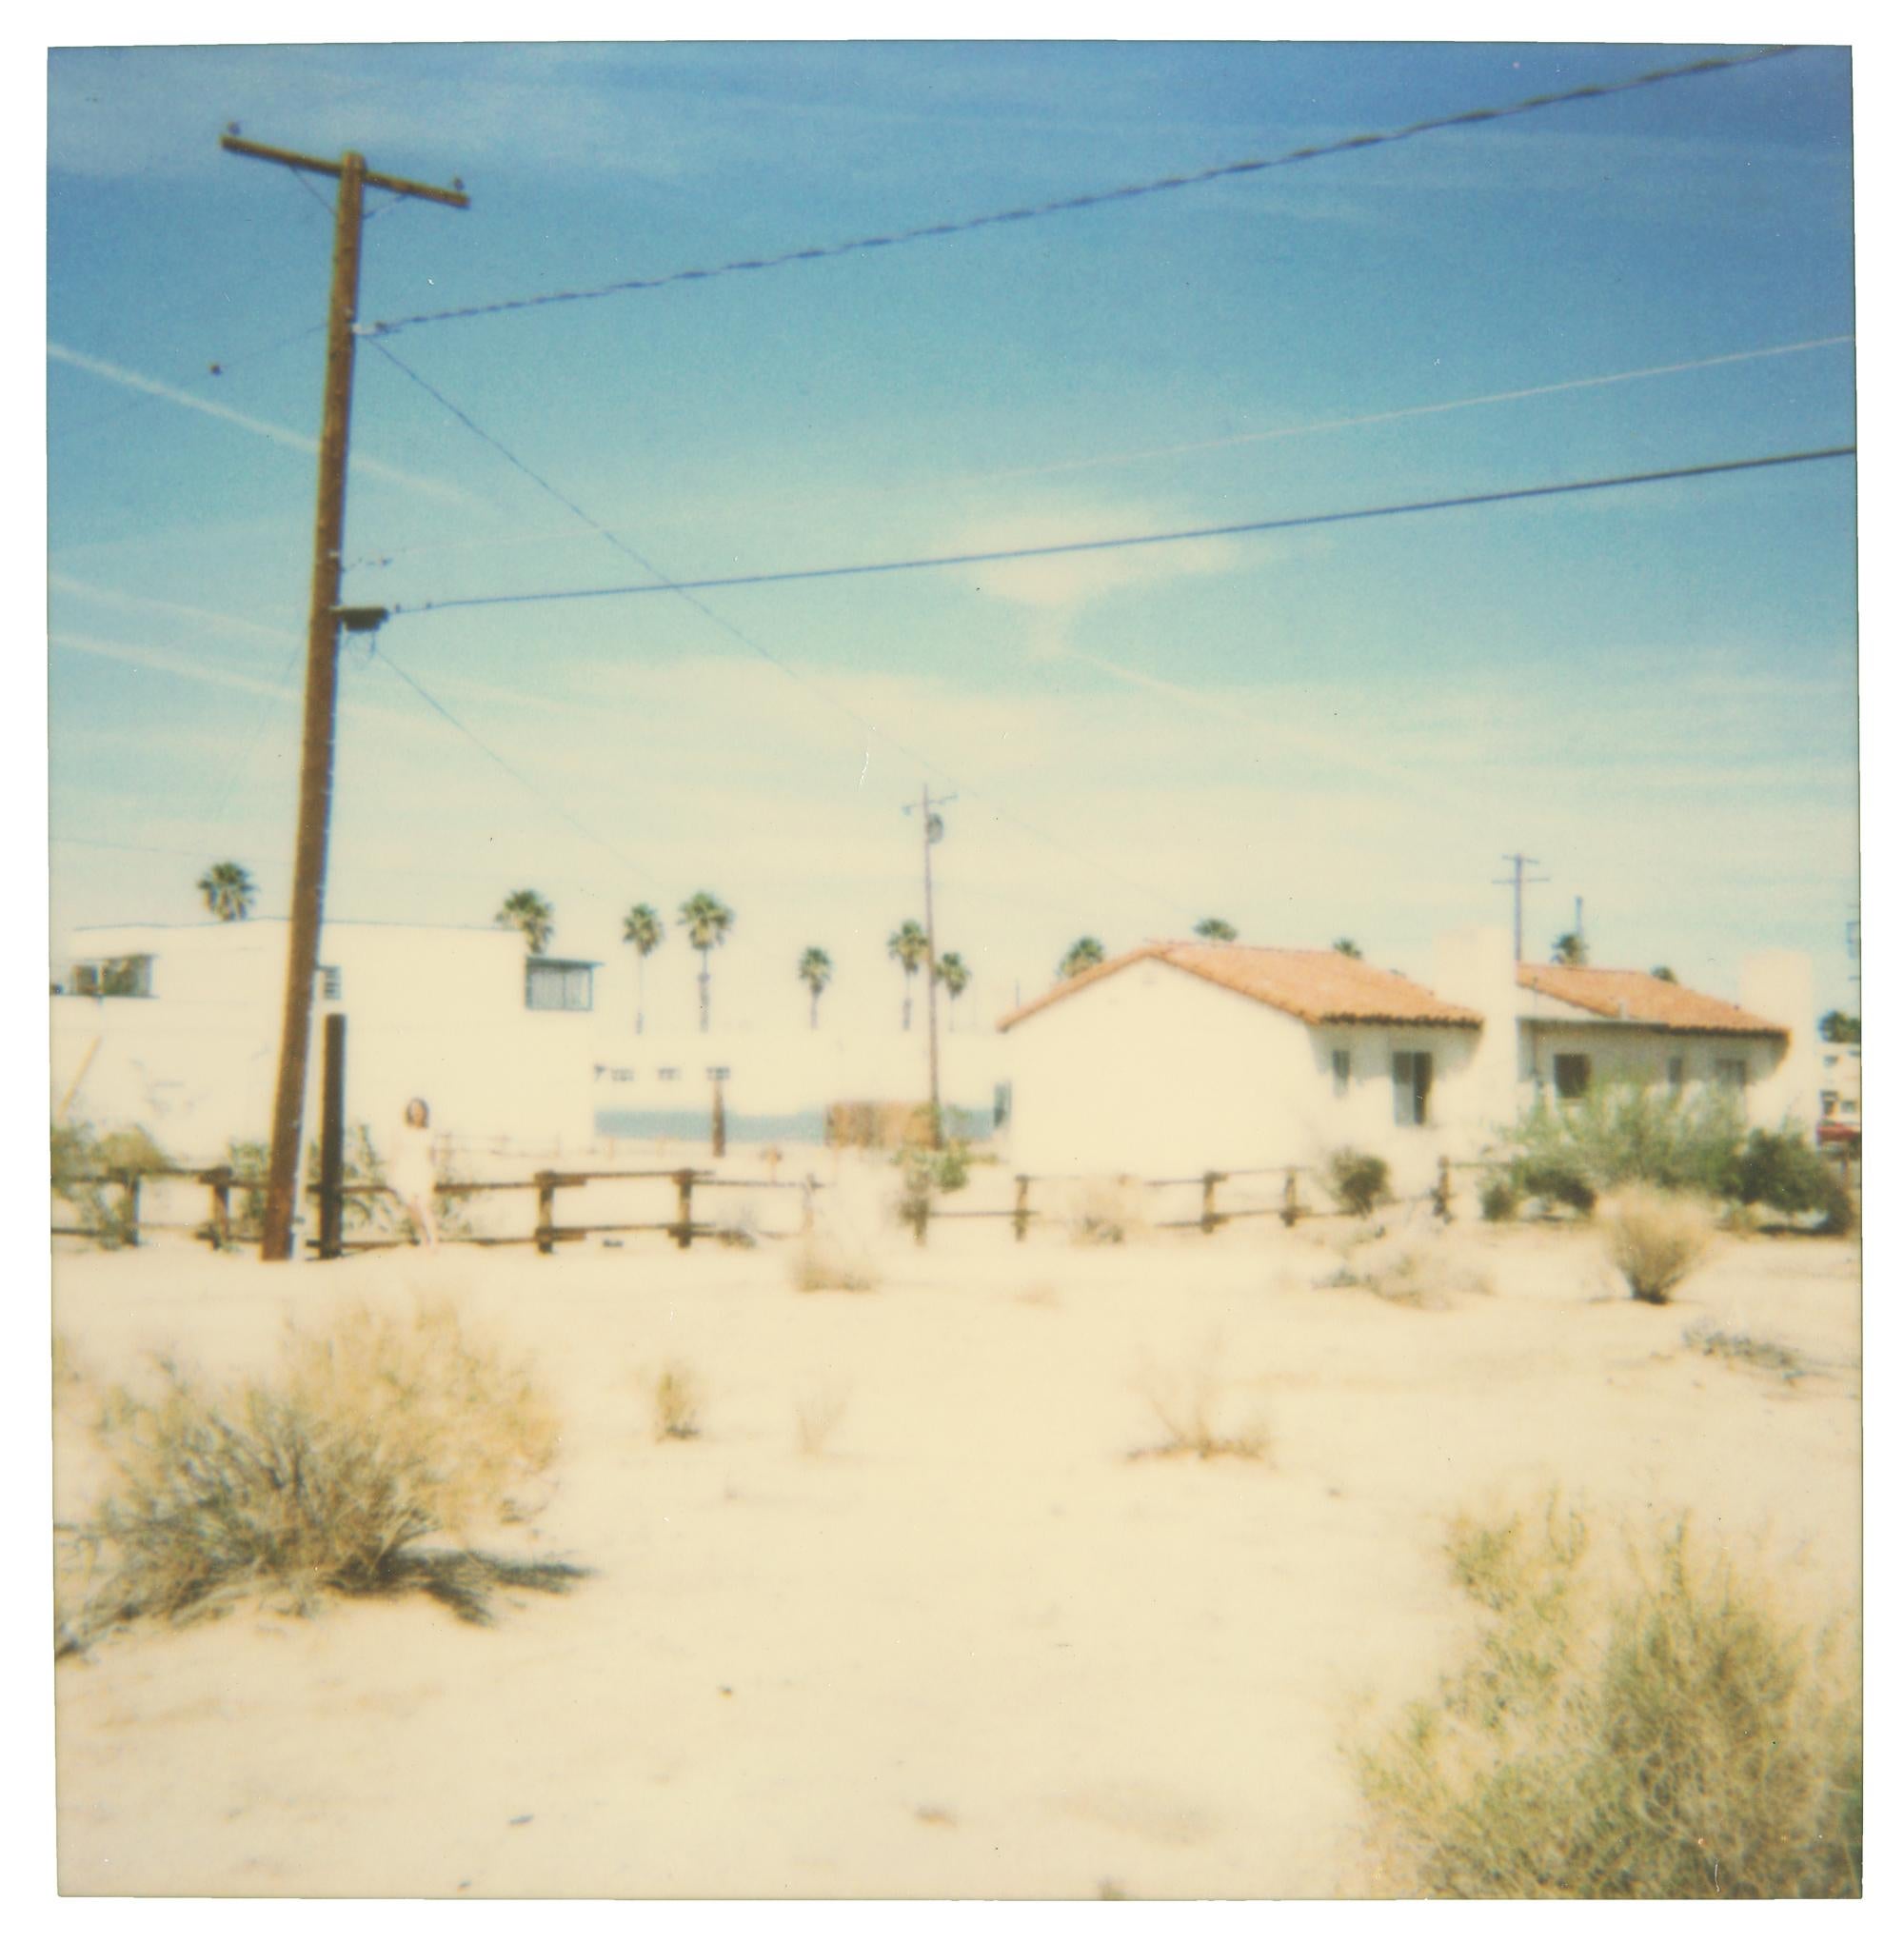 29 Palms, Kalifornien – Analog, montiert, Polaroid, 20. Jahrhundert, Zeitgenössisch, Landschaft